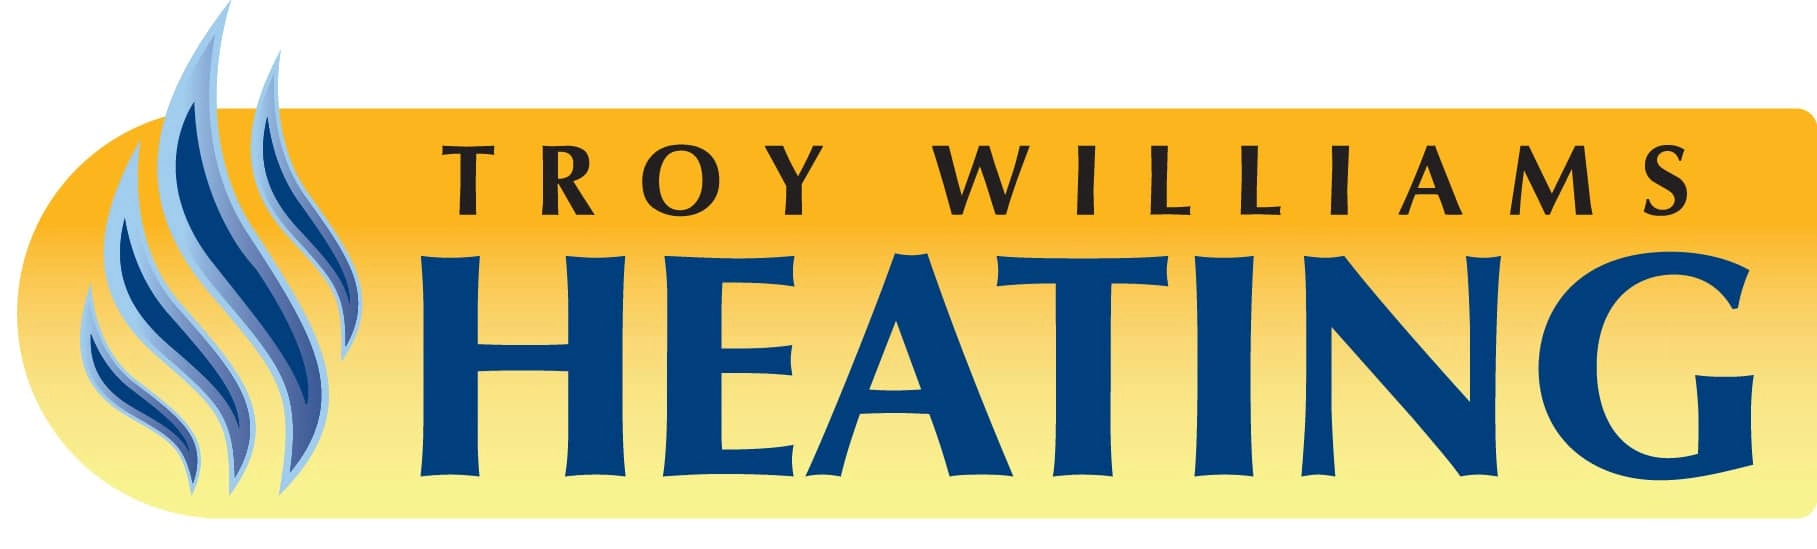 Troy Williams Heating Logo